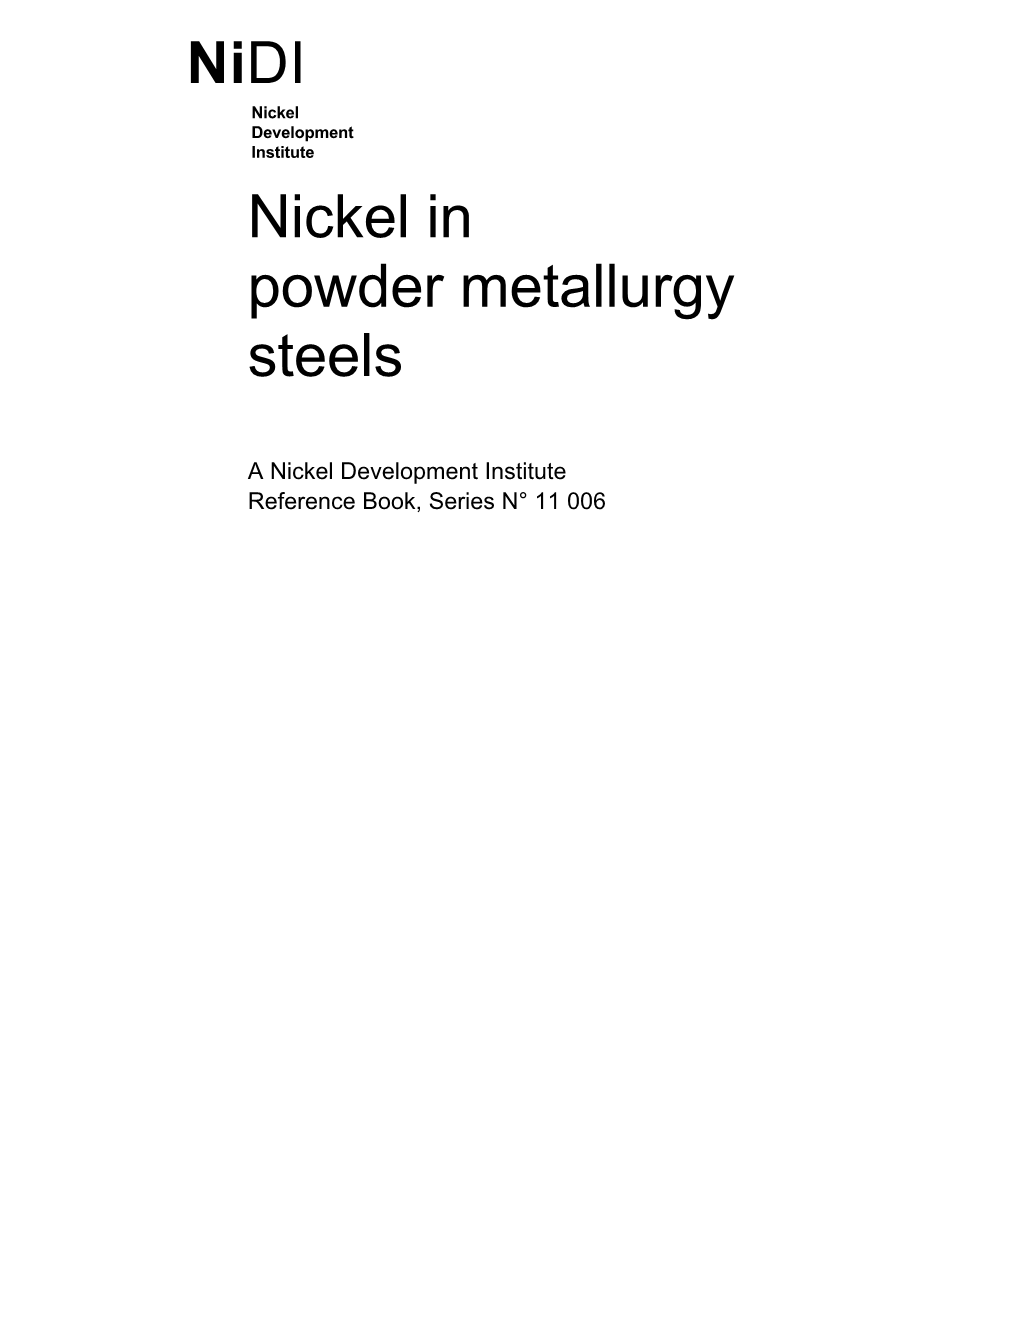 Nickel in Powder Metallurgy Steels